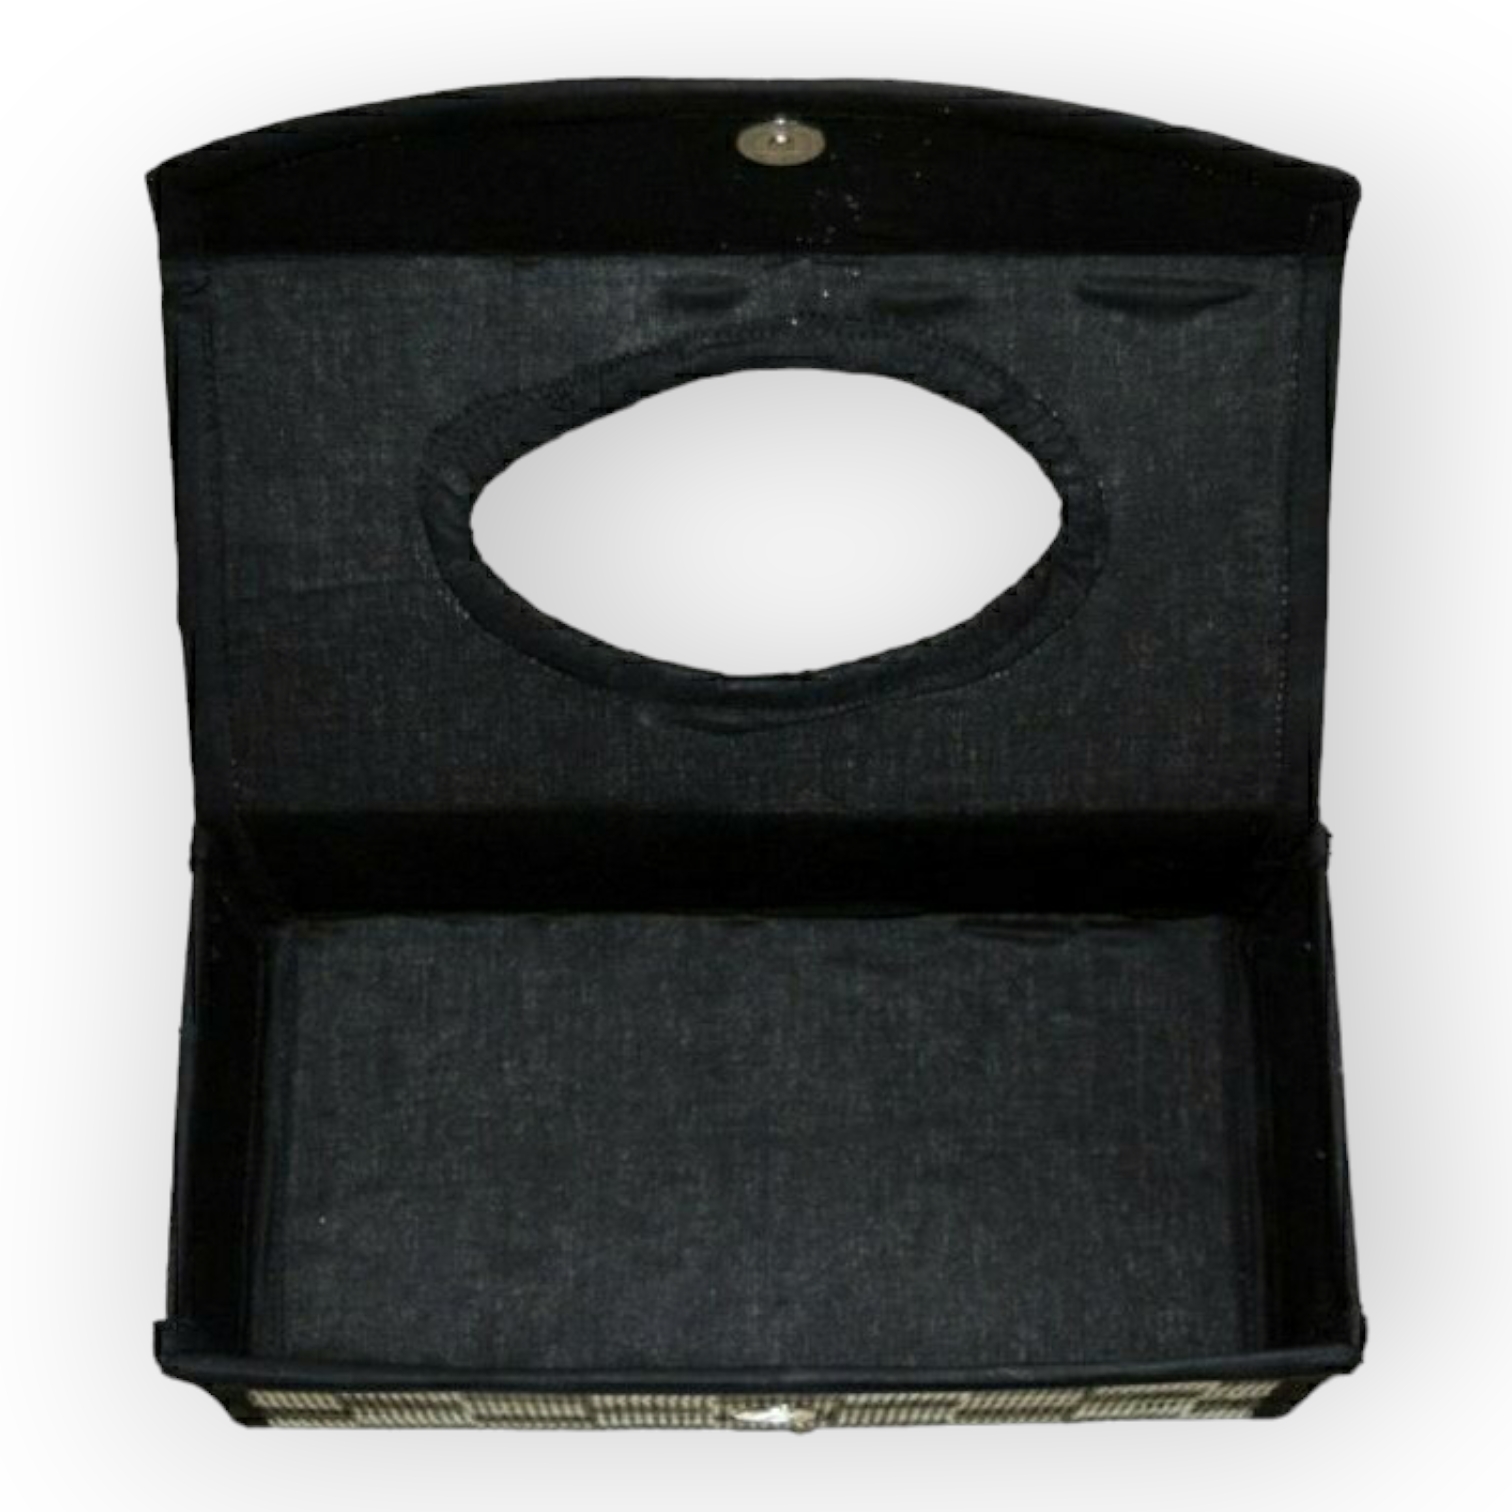 Madur Kathi Tissue Holder in Black Colour - 0